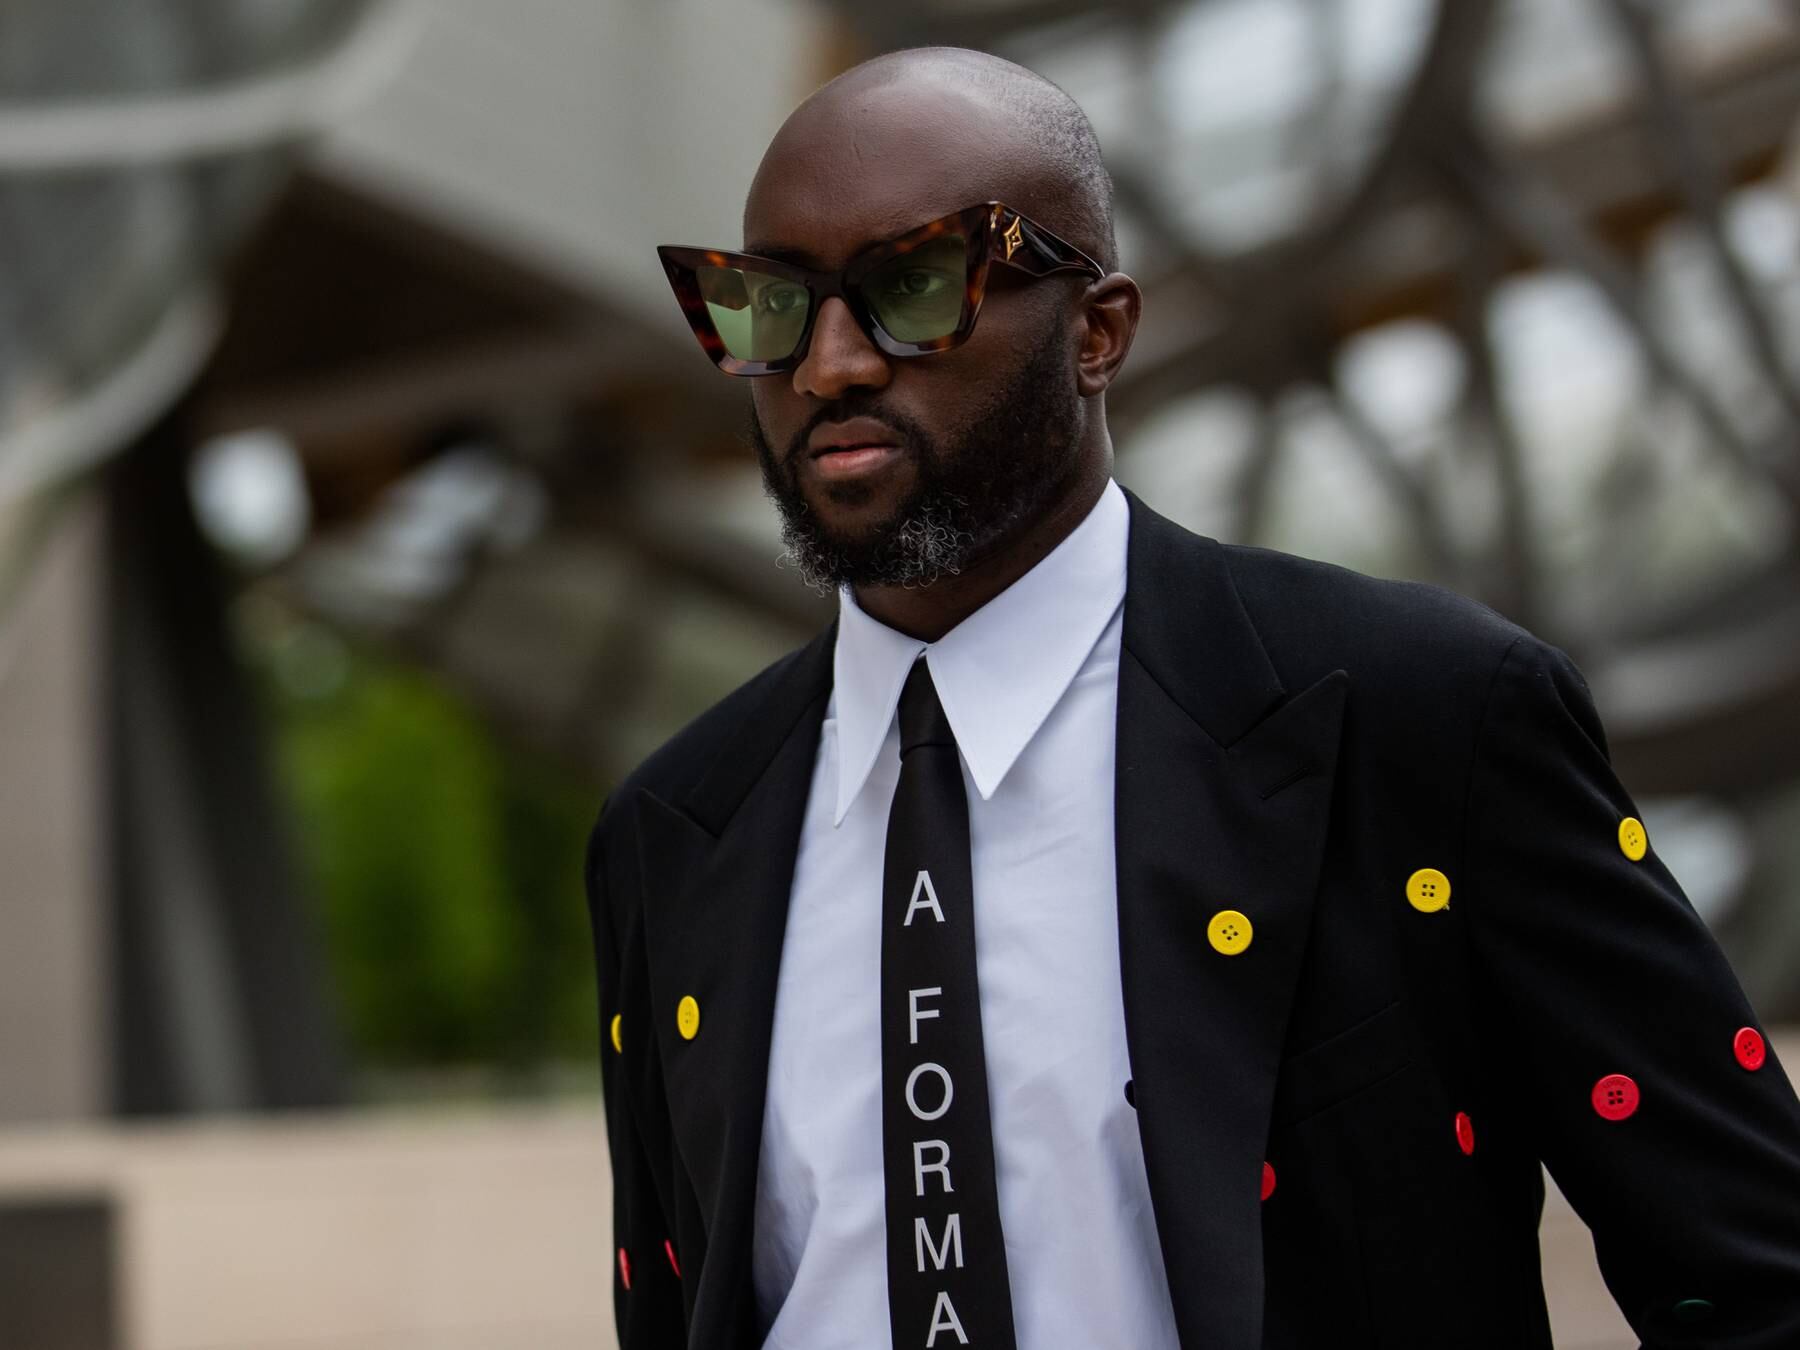 Virgil Abloh dead: Fashion designer, Kanye West collaborator was